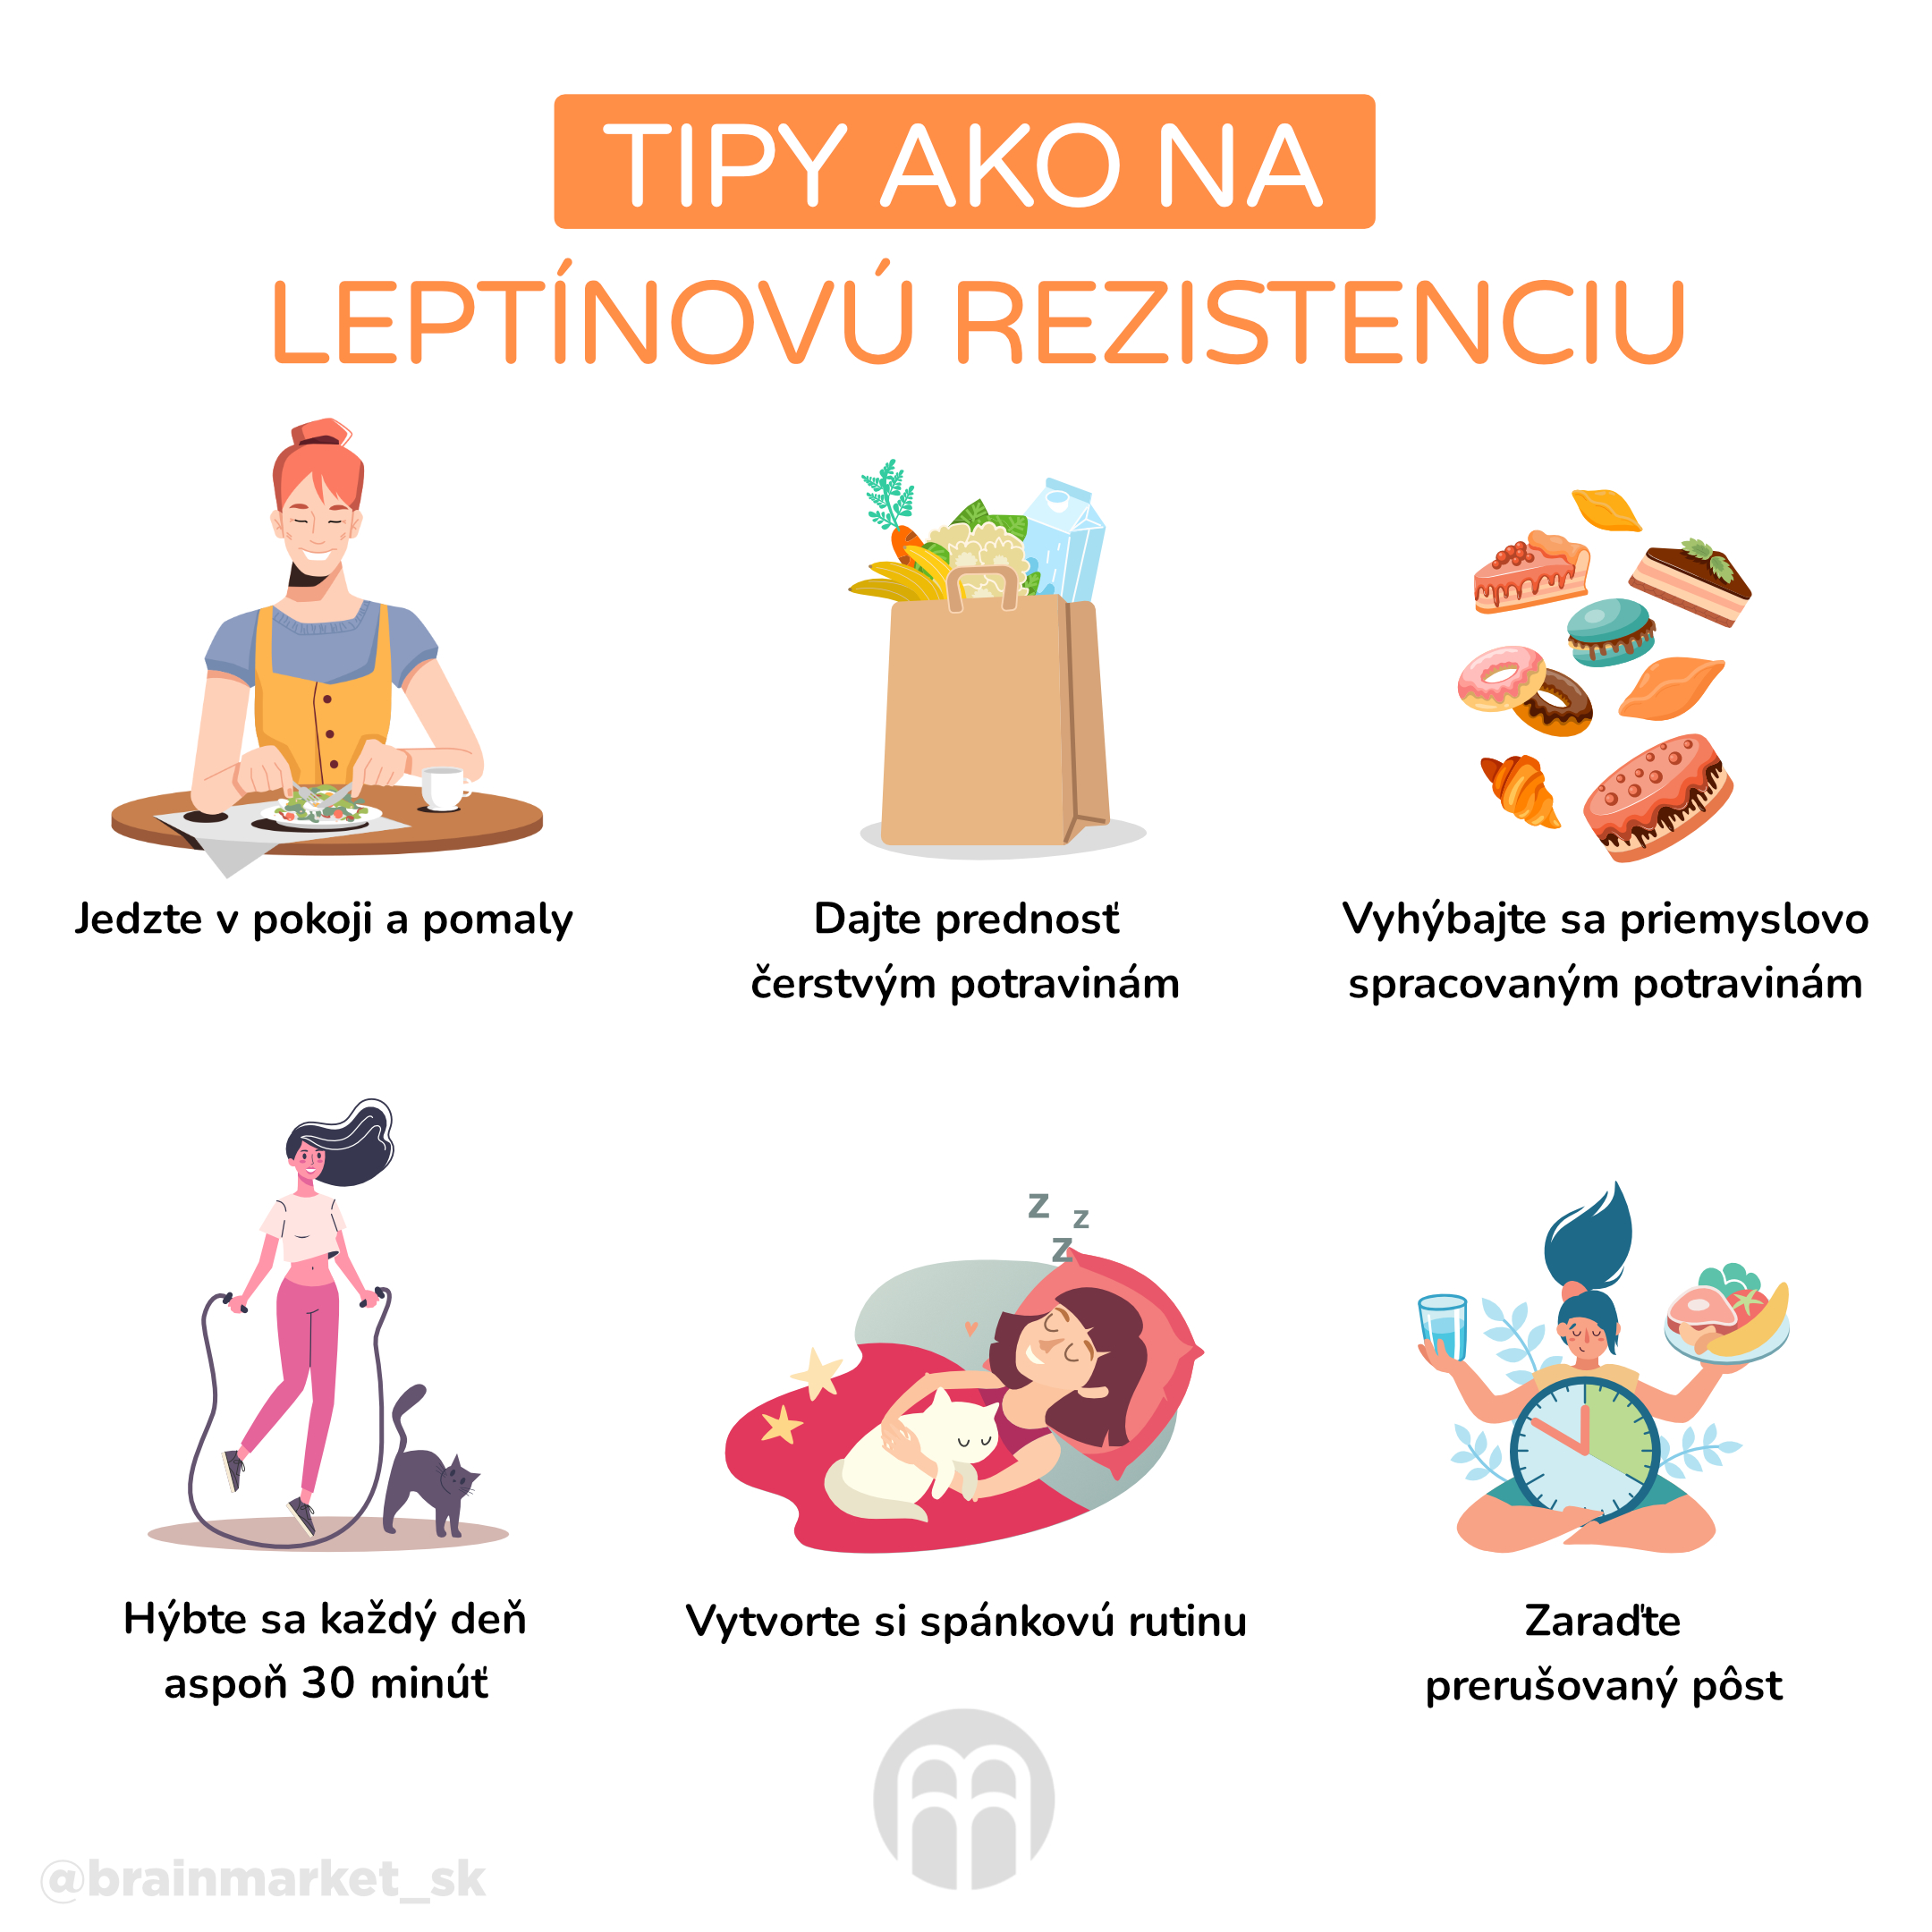 tipy jak na leptinovou rezistenci_infografika_cz